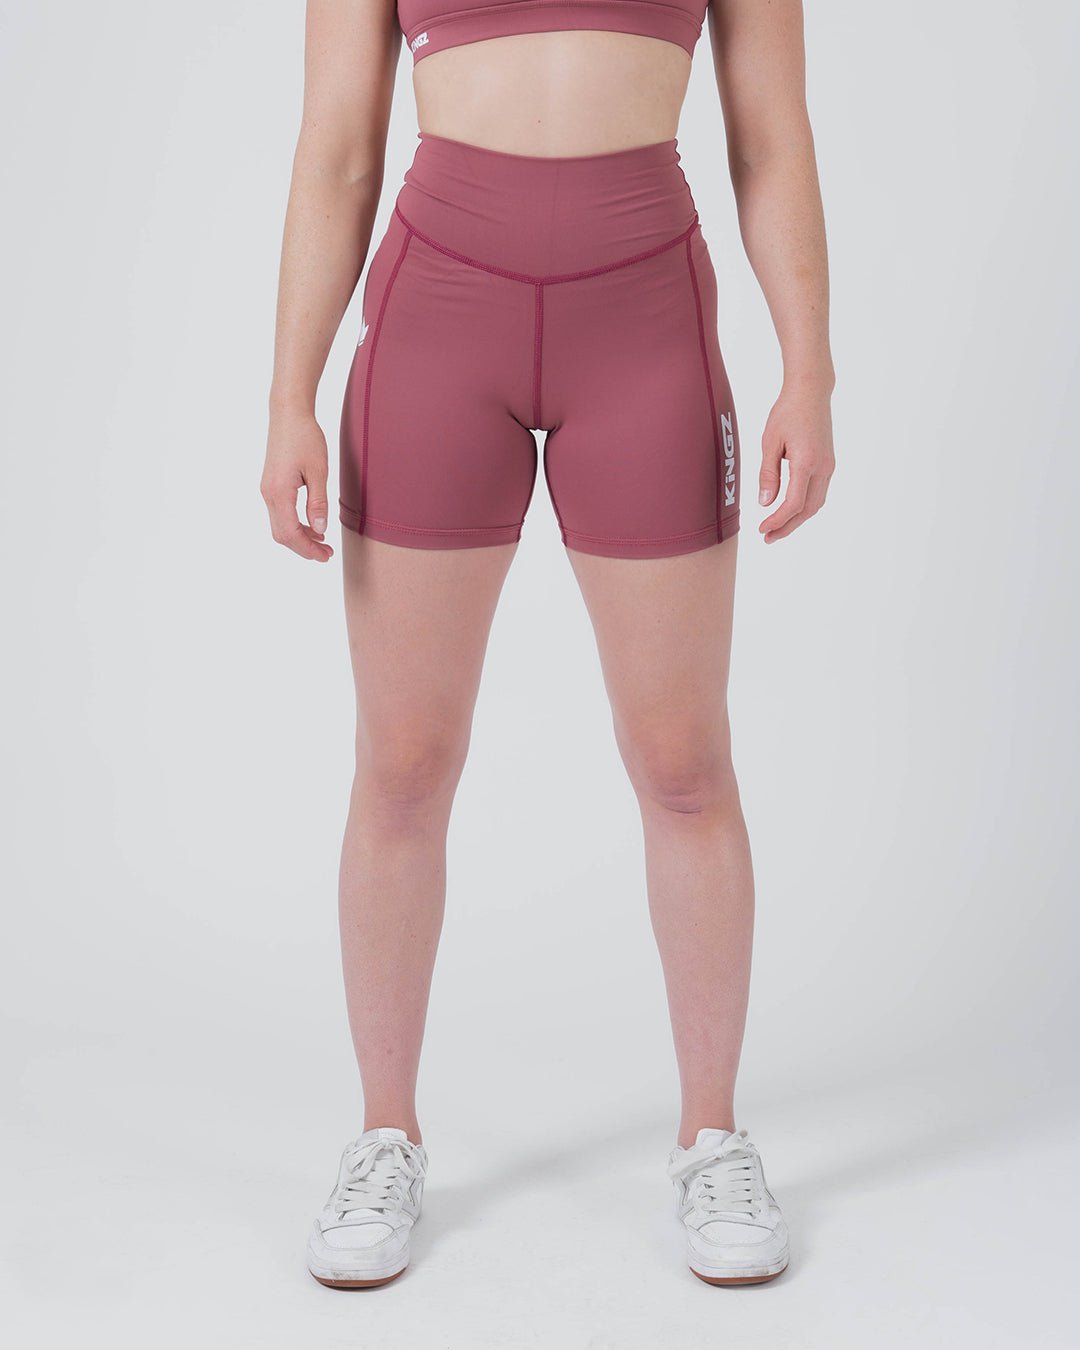 Womens Compression Shorts – KingzKimonos.com